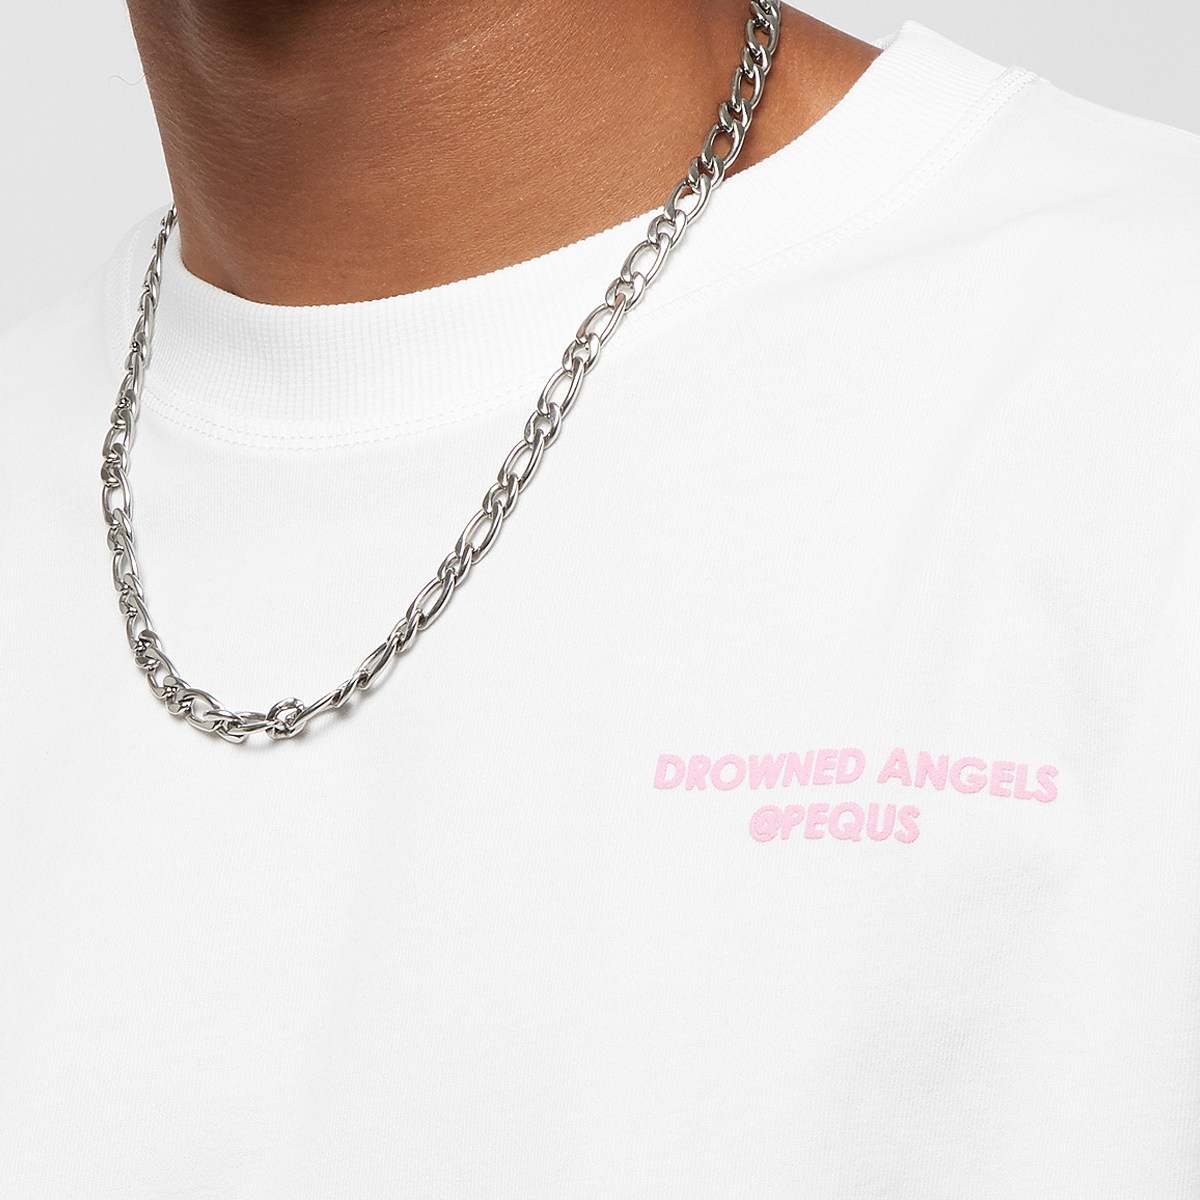 Pequs Drowned Angels Logo T-shirt T-shirts Kleding white maat: XL beschikbare maaten:XL